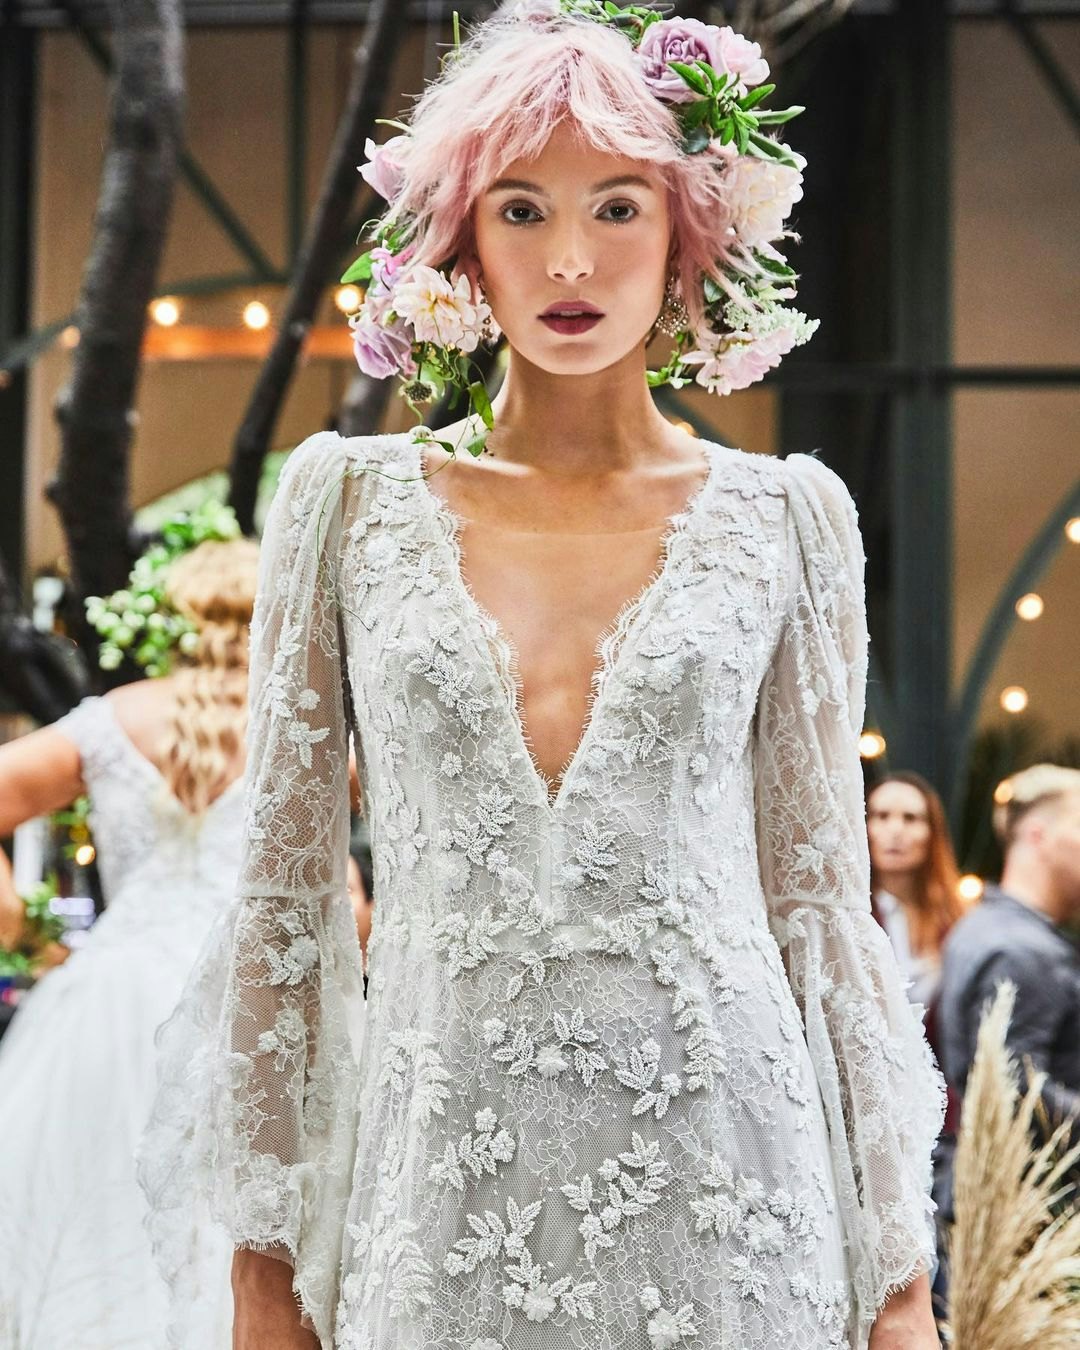 Floral wedding dress with deep v-neck 